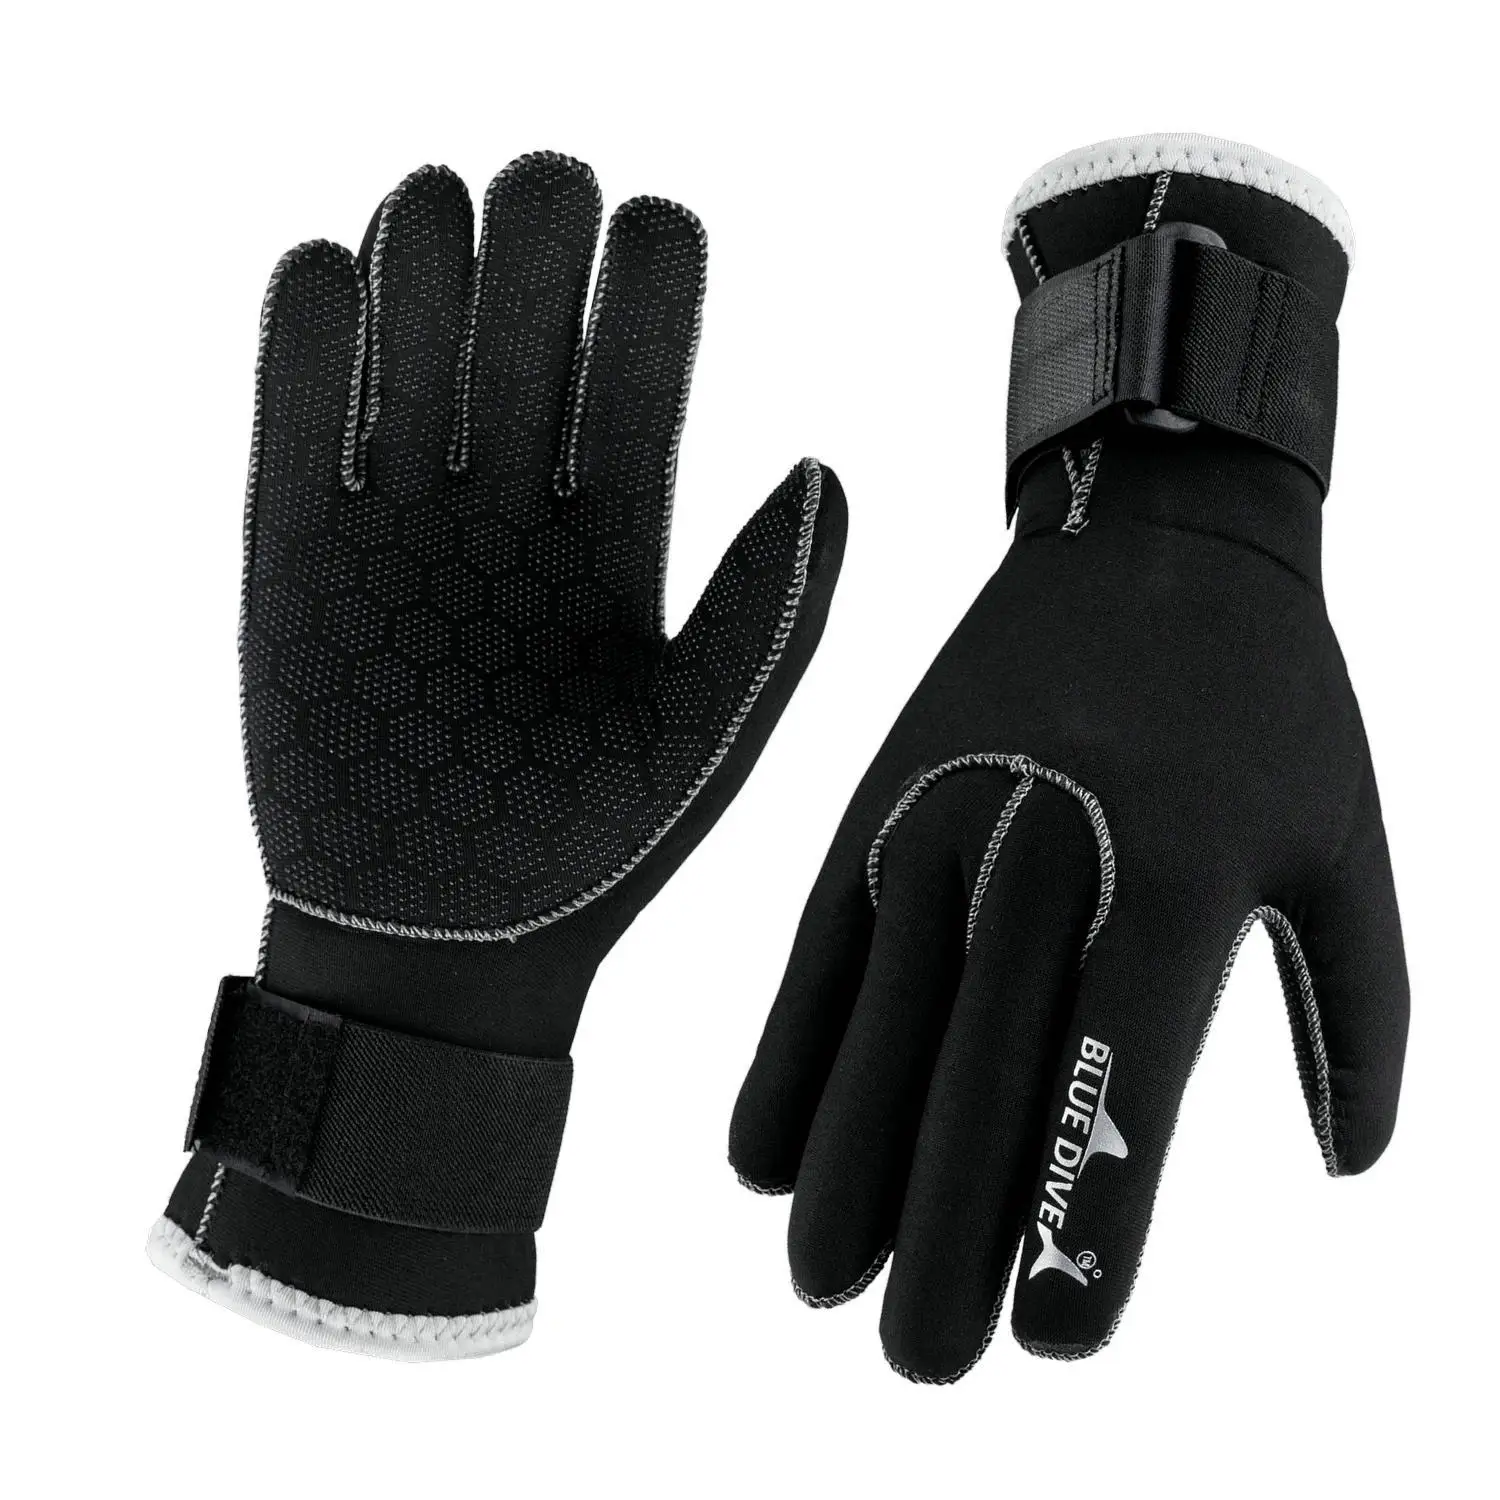 3 мм Утолщенные перчатки для подводного плавания с глубоким покрытием, водонепроницаемые, теплые, износостойкие, против царапин, Профессиональные перчатки для серфинга и дайвинга, против порезов 0